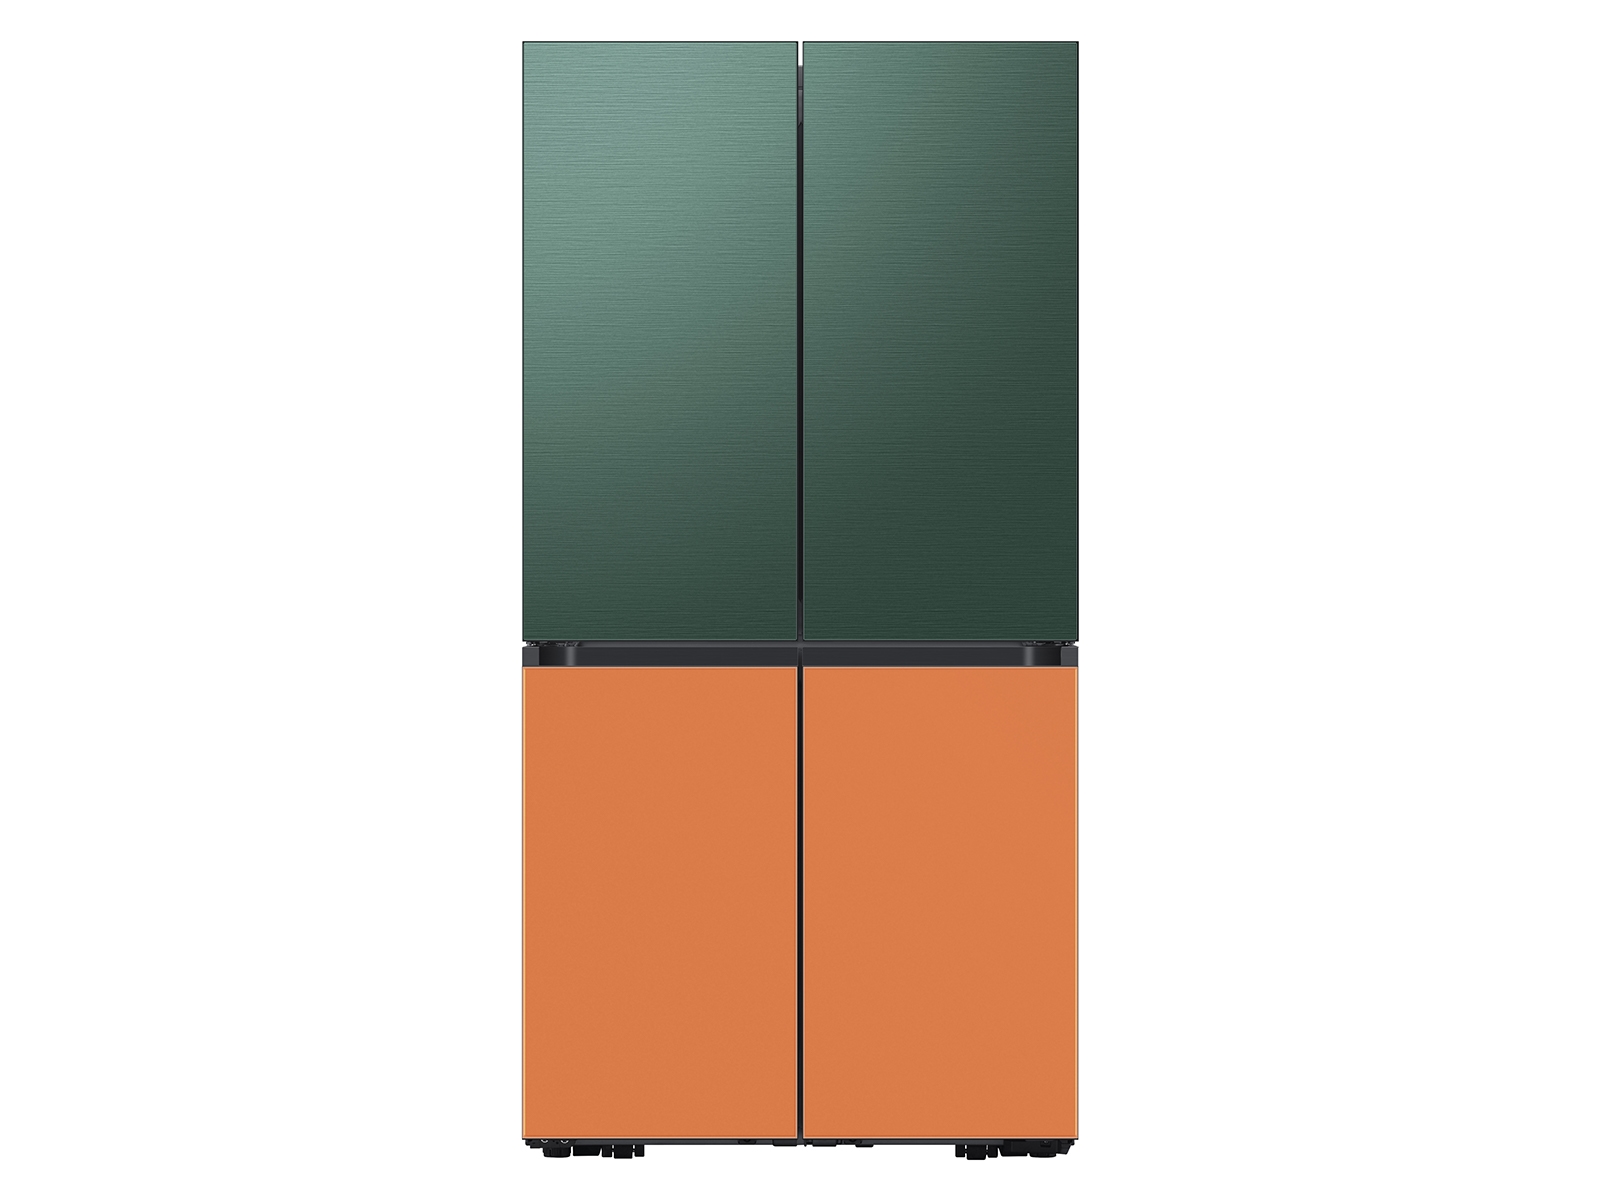 Thumbnail image of Bespoke 4-Door Flex&trade; Refrigerator Panel in Emerald Green Steel - Top Panel